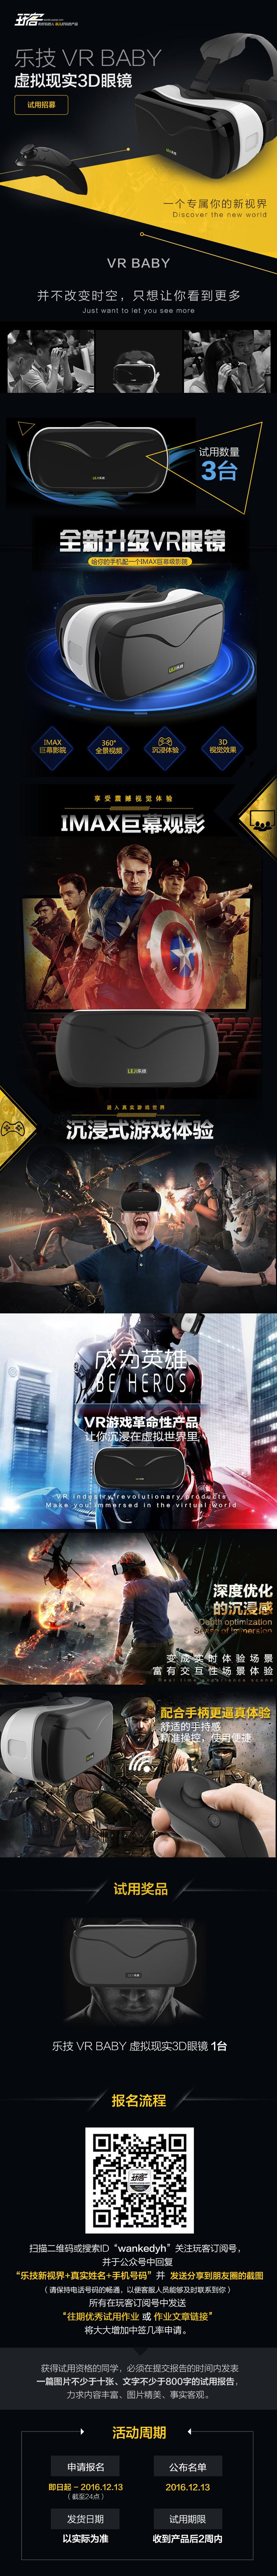 乐技VRBABY虚拟3D眼镜 玩客试用招募 